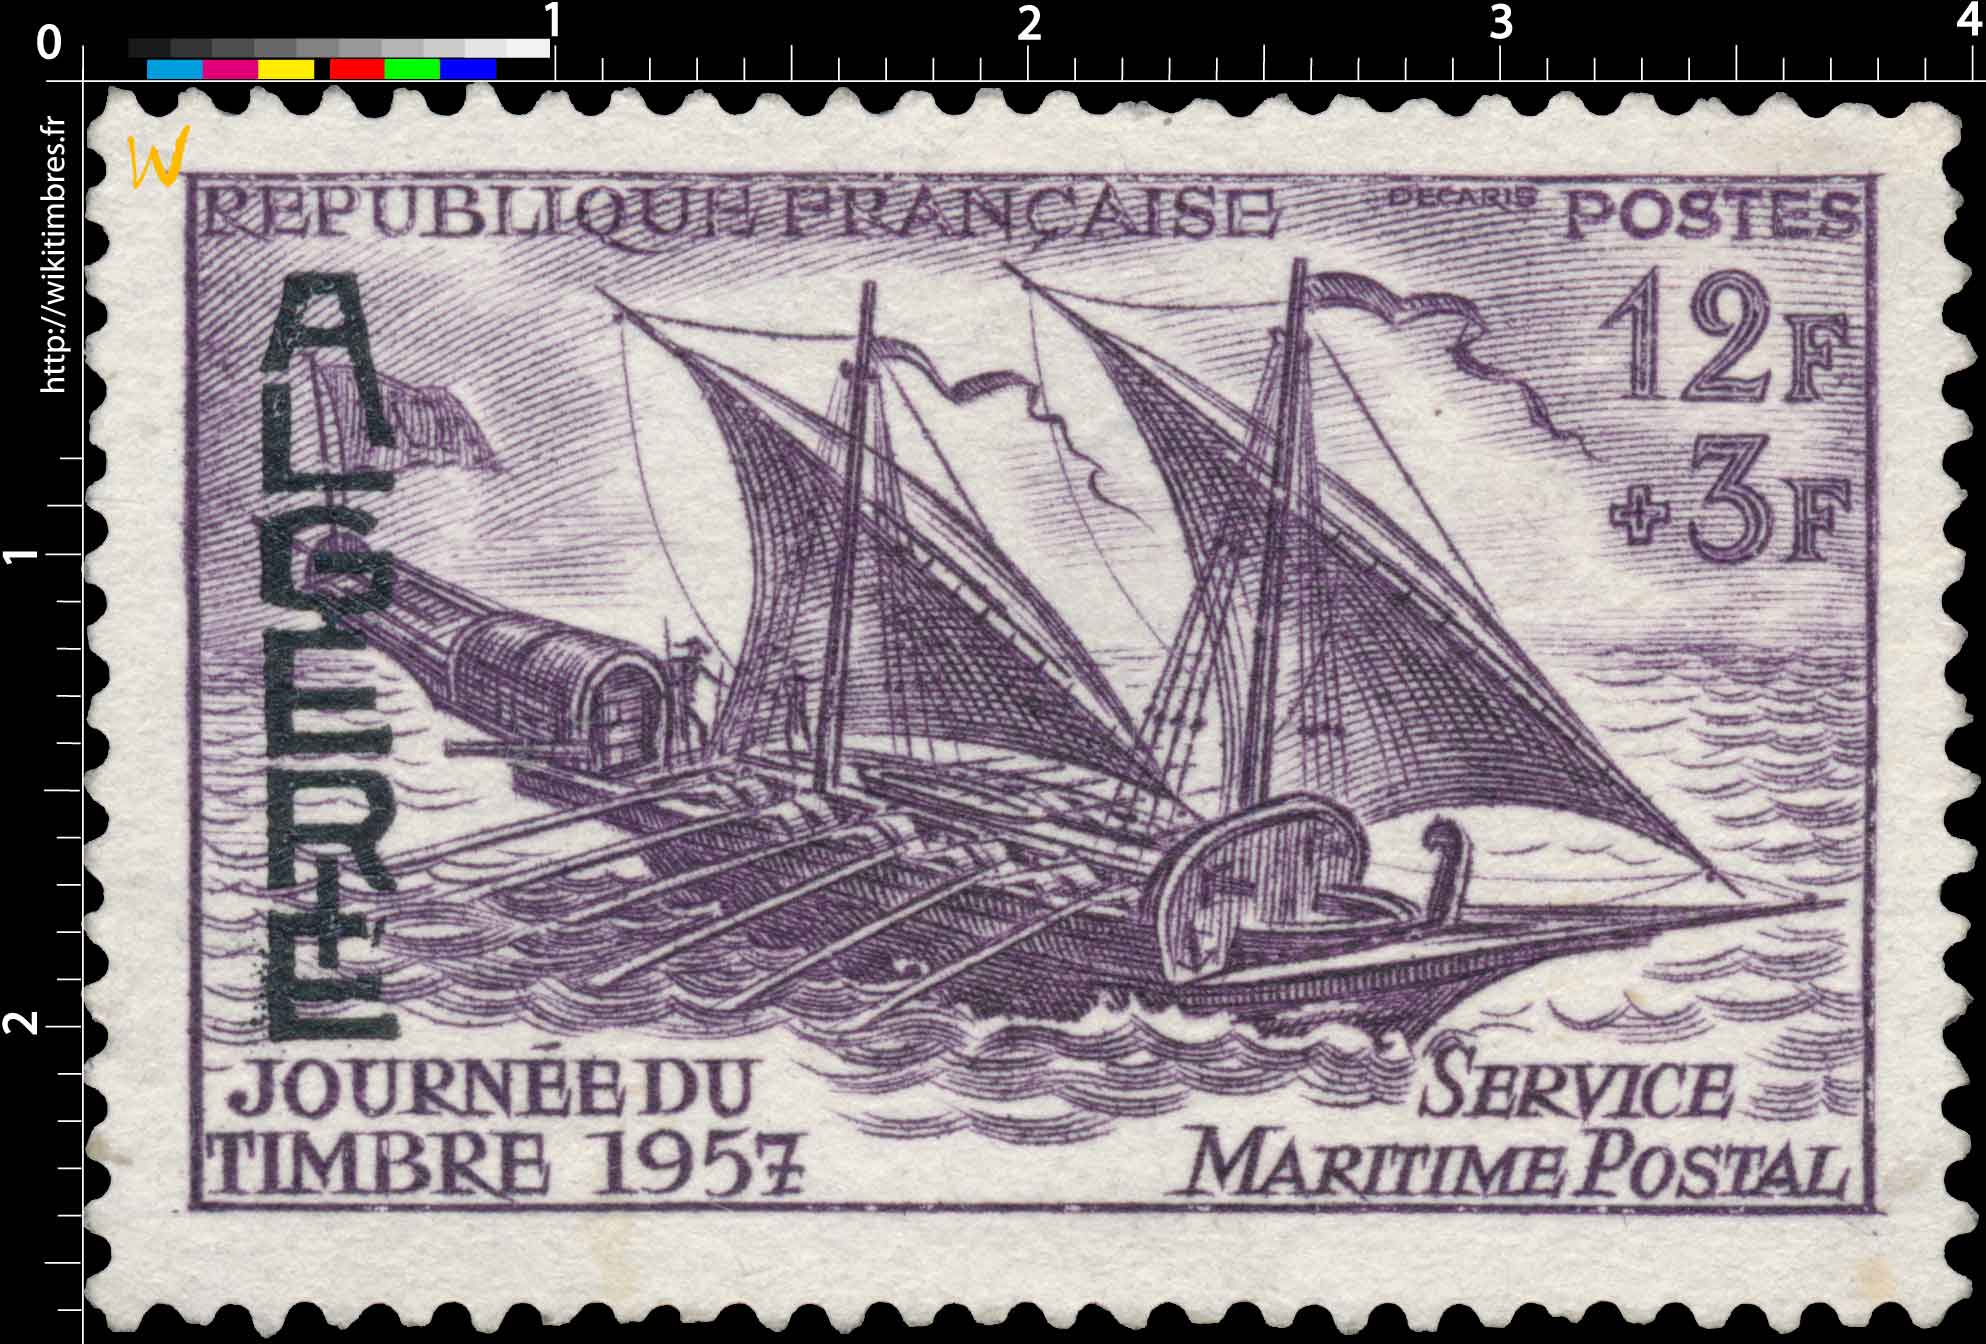 Algérie - Journée du Timbre 1957 service maritime postal